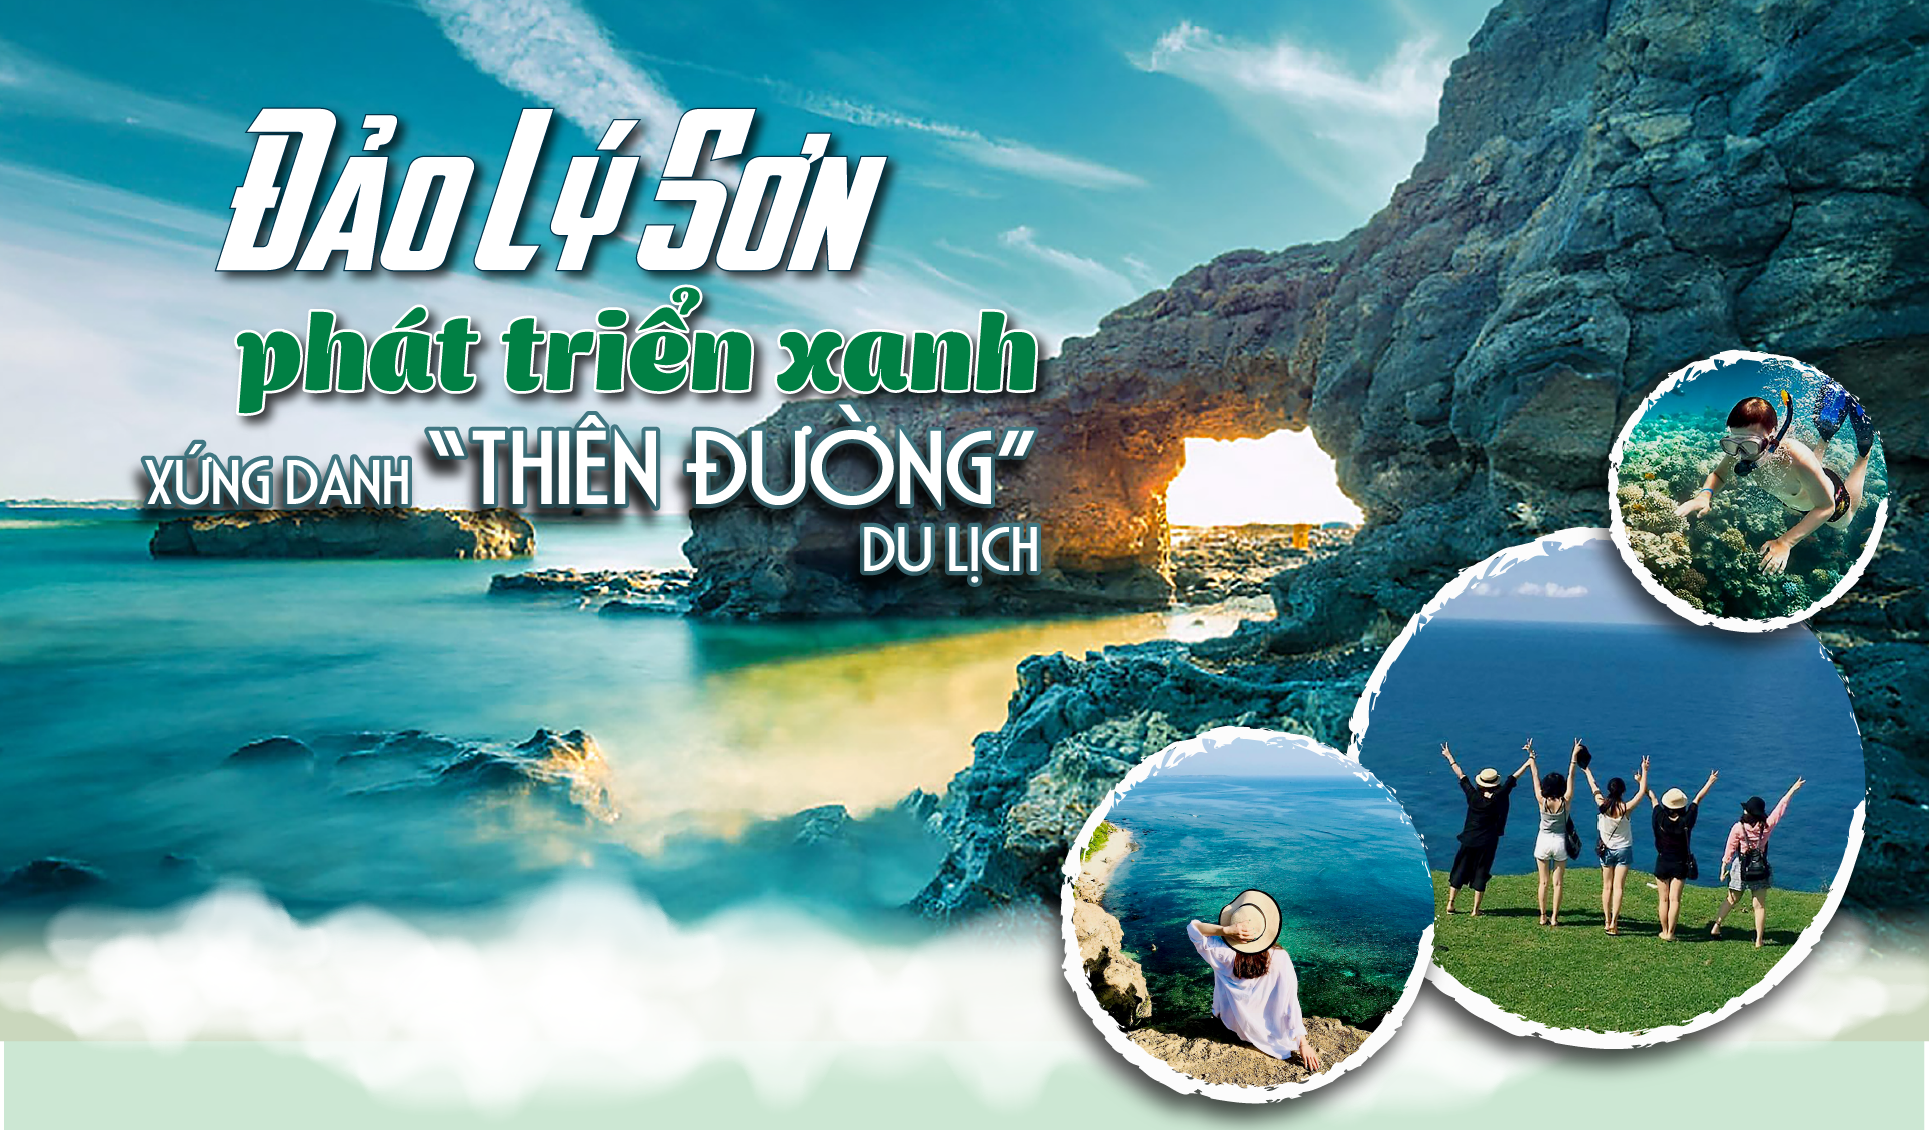 Đảo Lý Sơn phát triển xanh, xứng danh “thiên đường” du lịch  - Ảnh 1